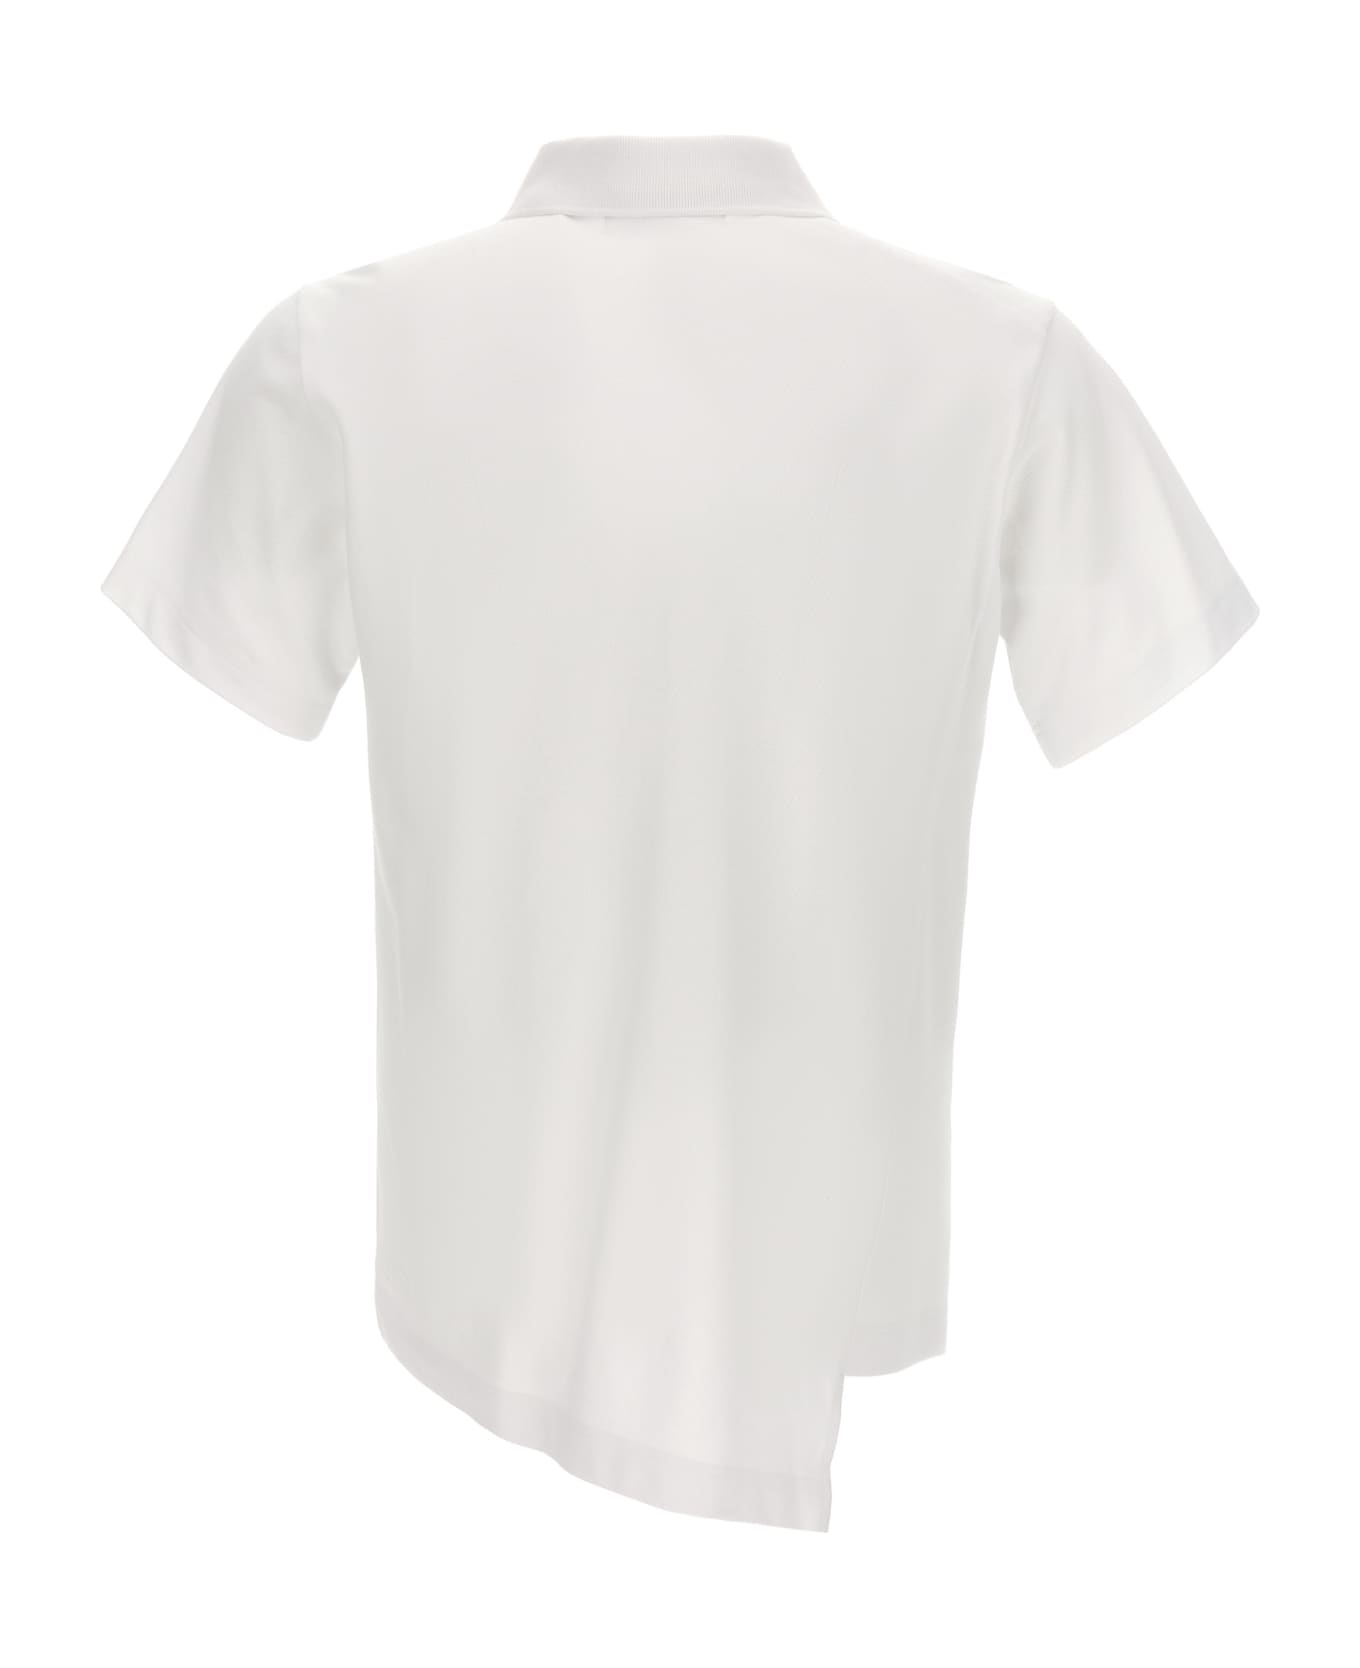 Comme des Garçons Shirt Polo X Lacoste - White